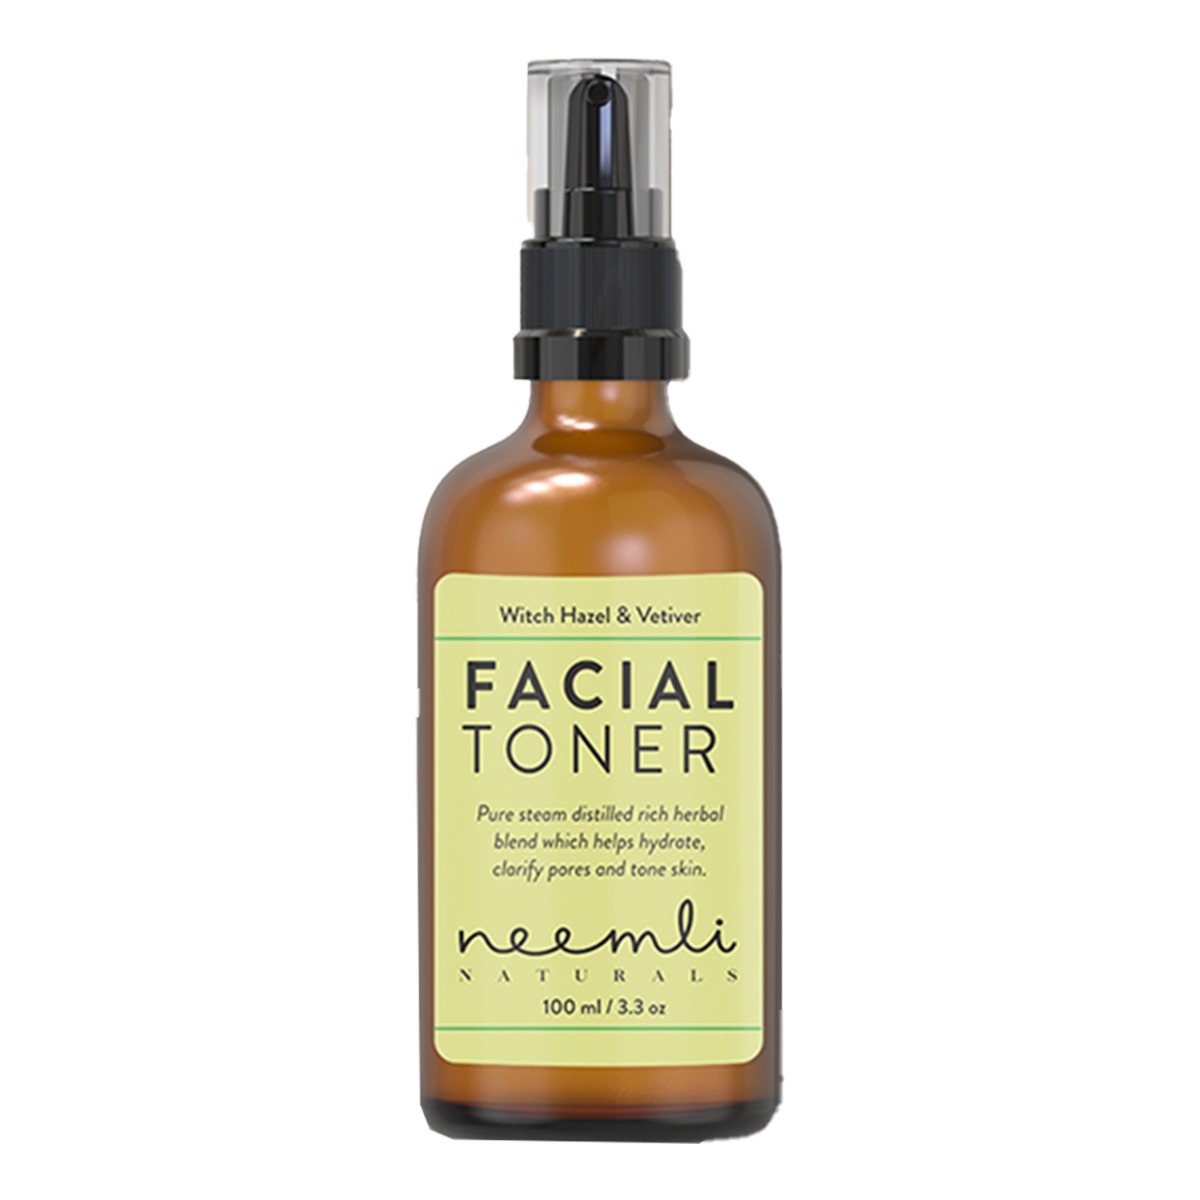 Neemli Naturals Witch Hazel & Vetiver Facial Toner, 100ml